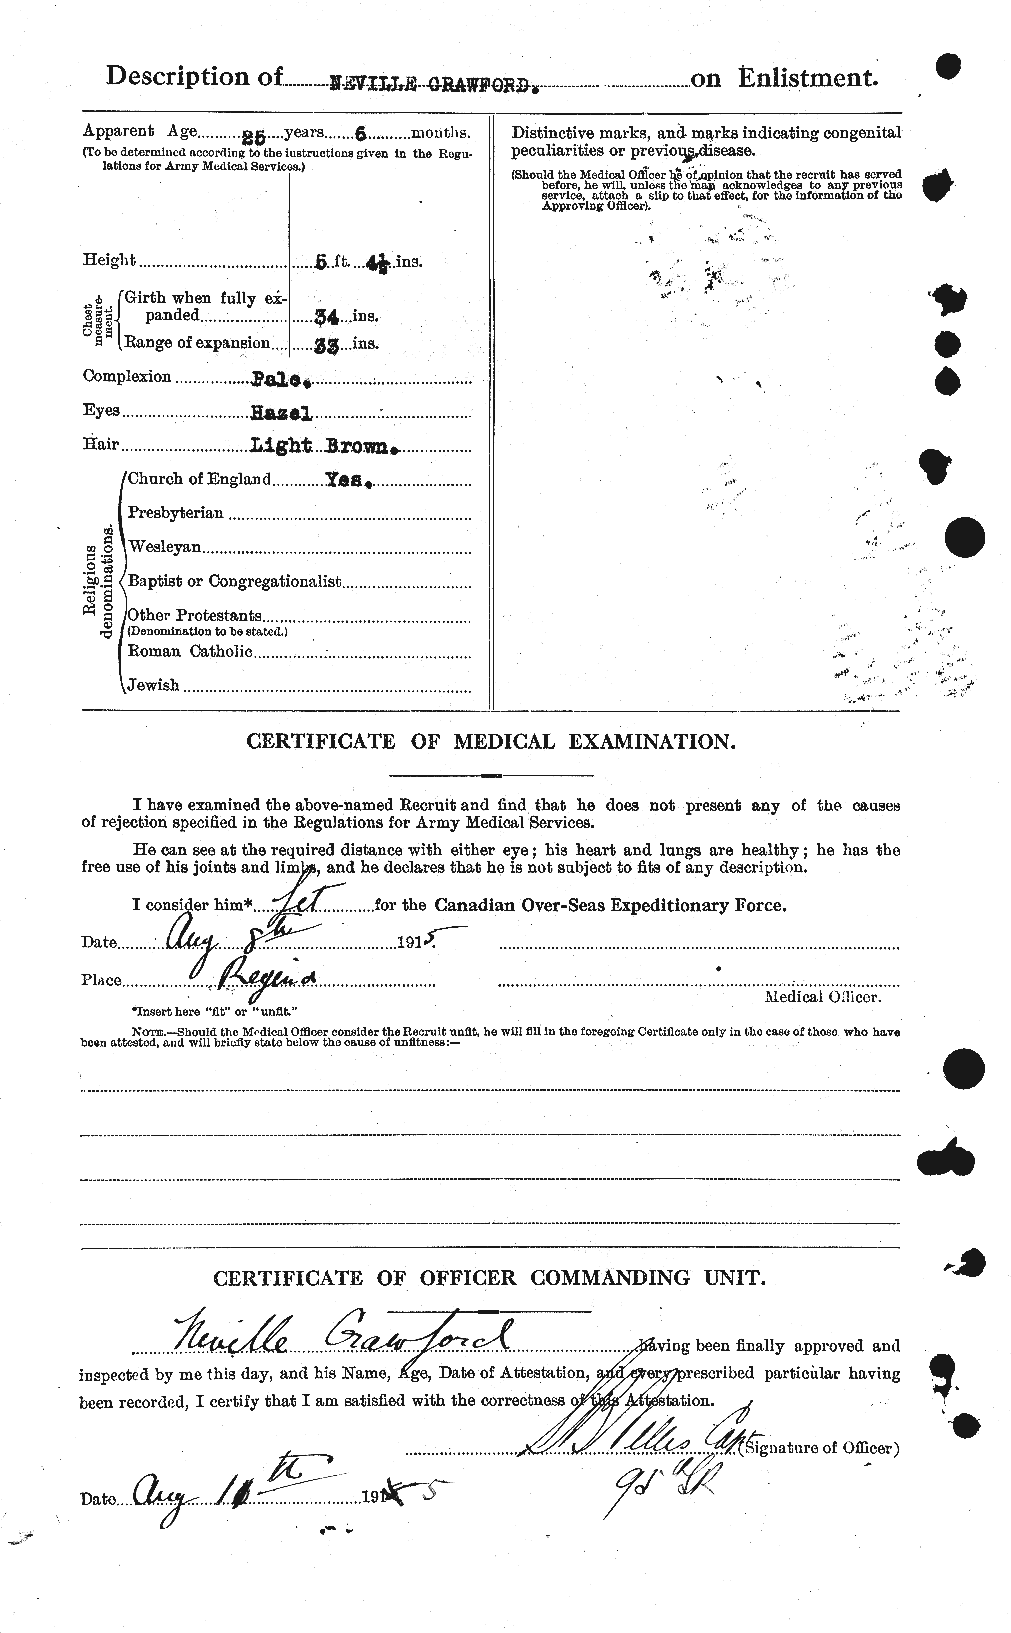 Dossiers du Personnel de la Première Guerre mondiale - CEC 061661b